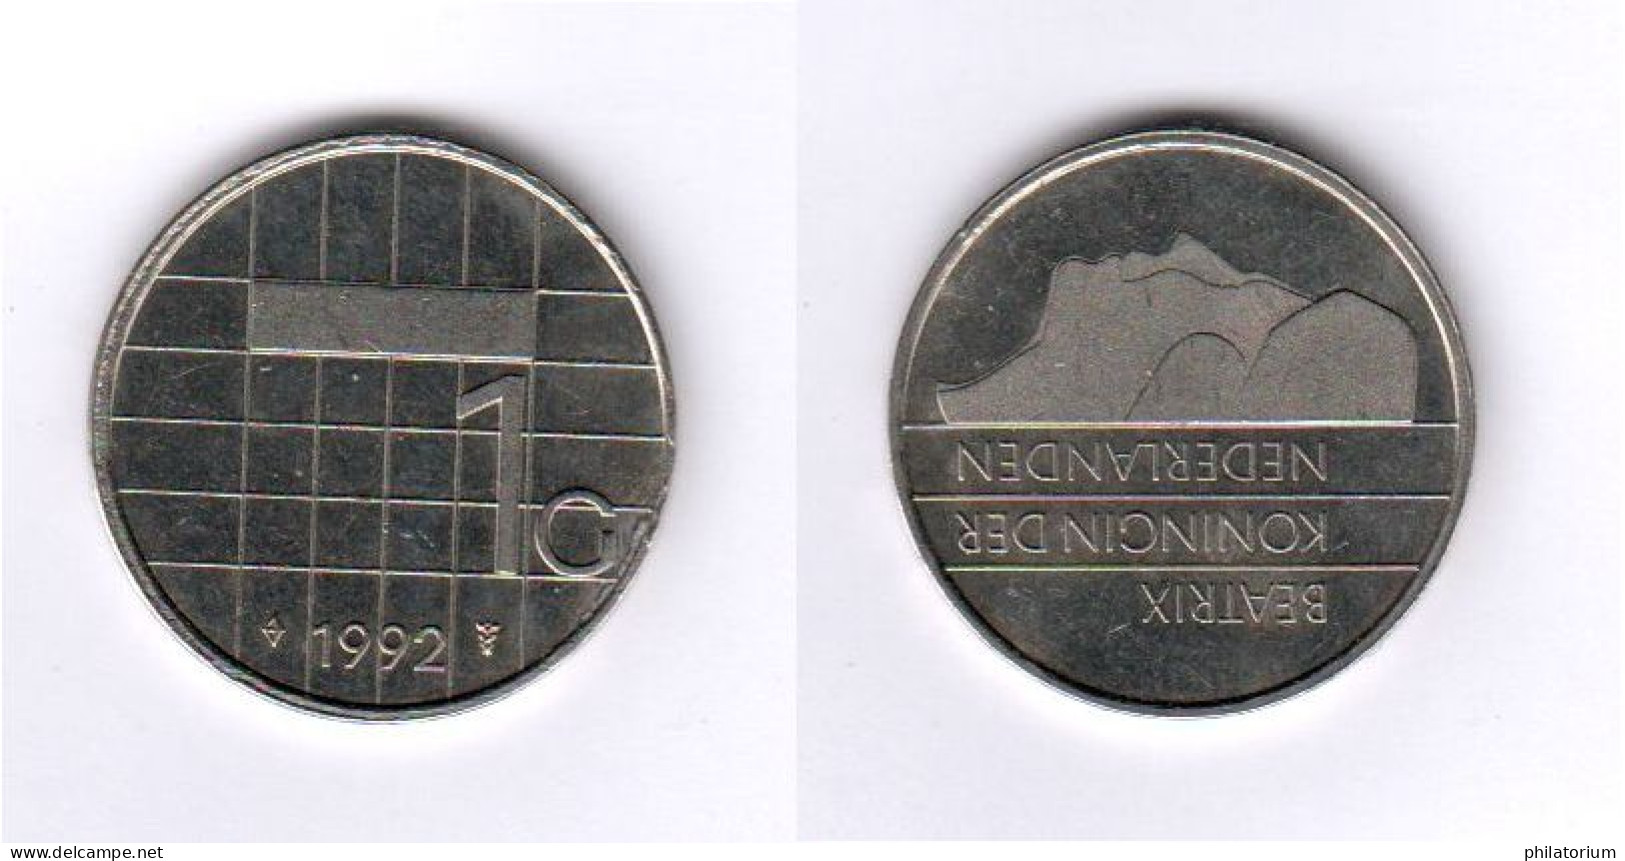 Pays Bas, 1 Gulden, 1G, 1992, KM# 205, Beatrix, Nederland, - 1980-2001 : Beatrix